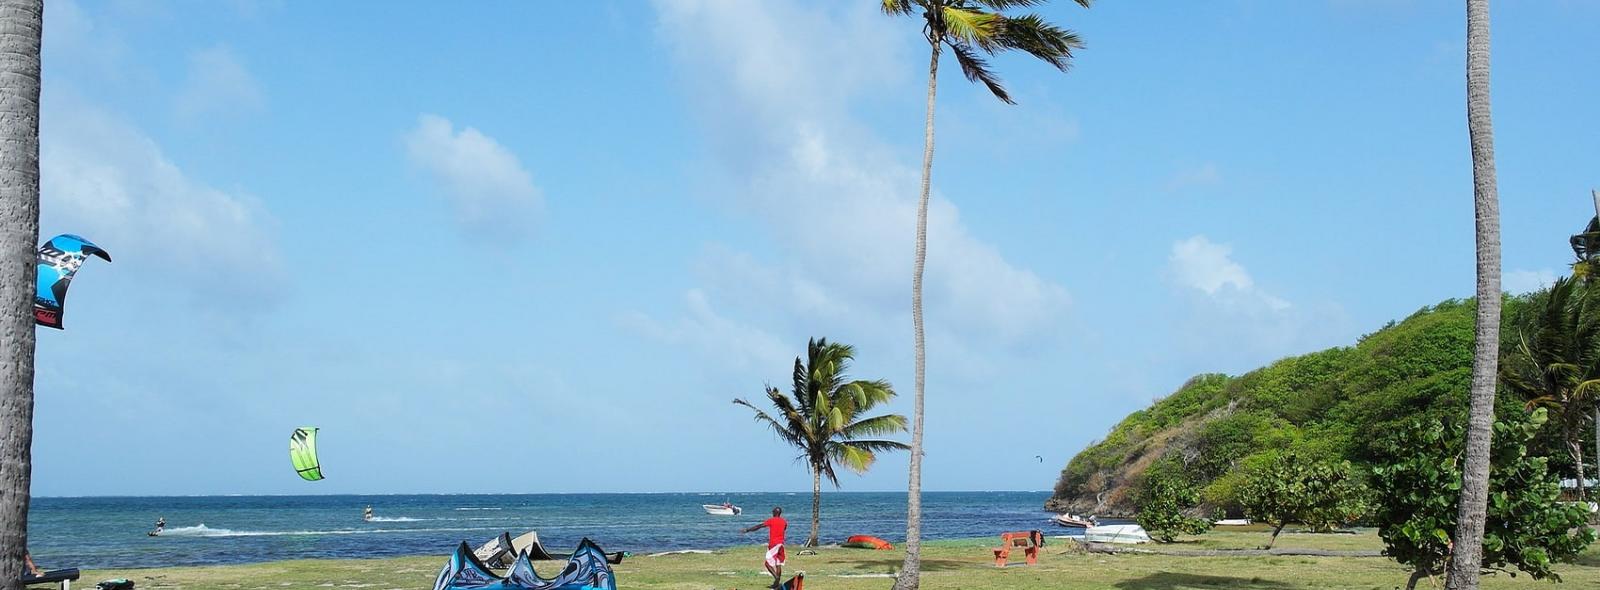 Zone de kitesurf au centre nautique du Vauclin en martinique dans les Antilles 